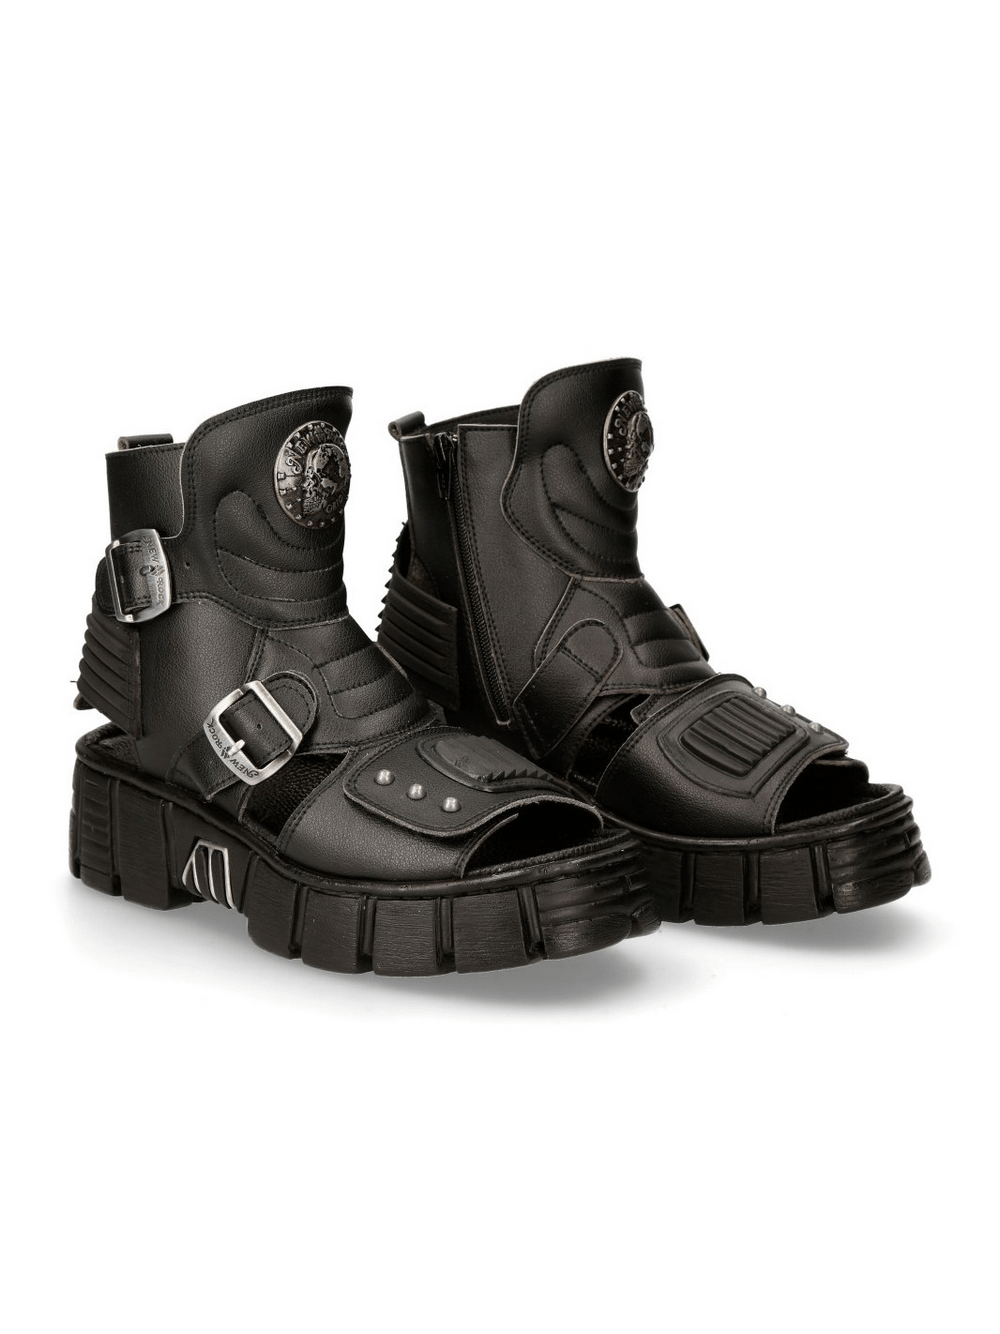 NEW ROCK Bio Black Tower Sandals - Unisex Gothic Footwear